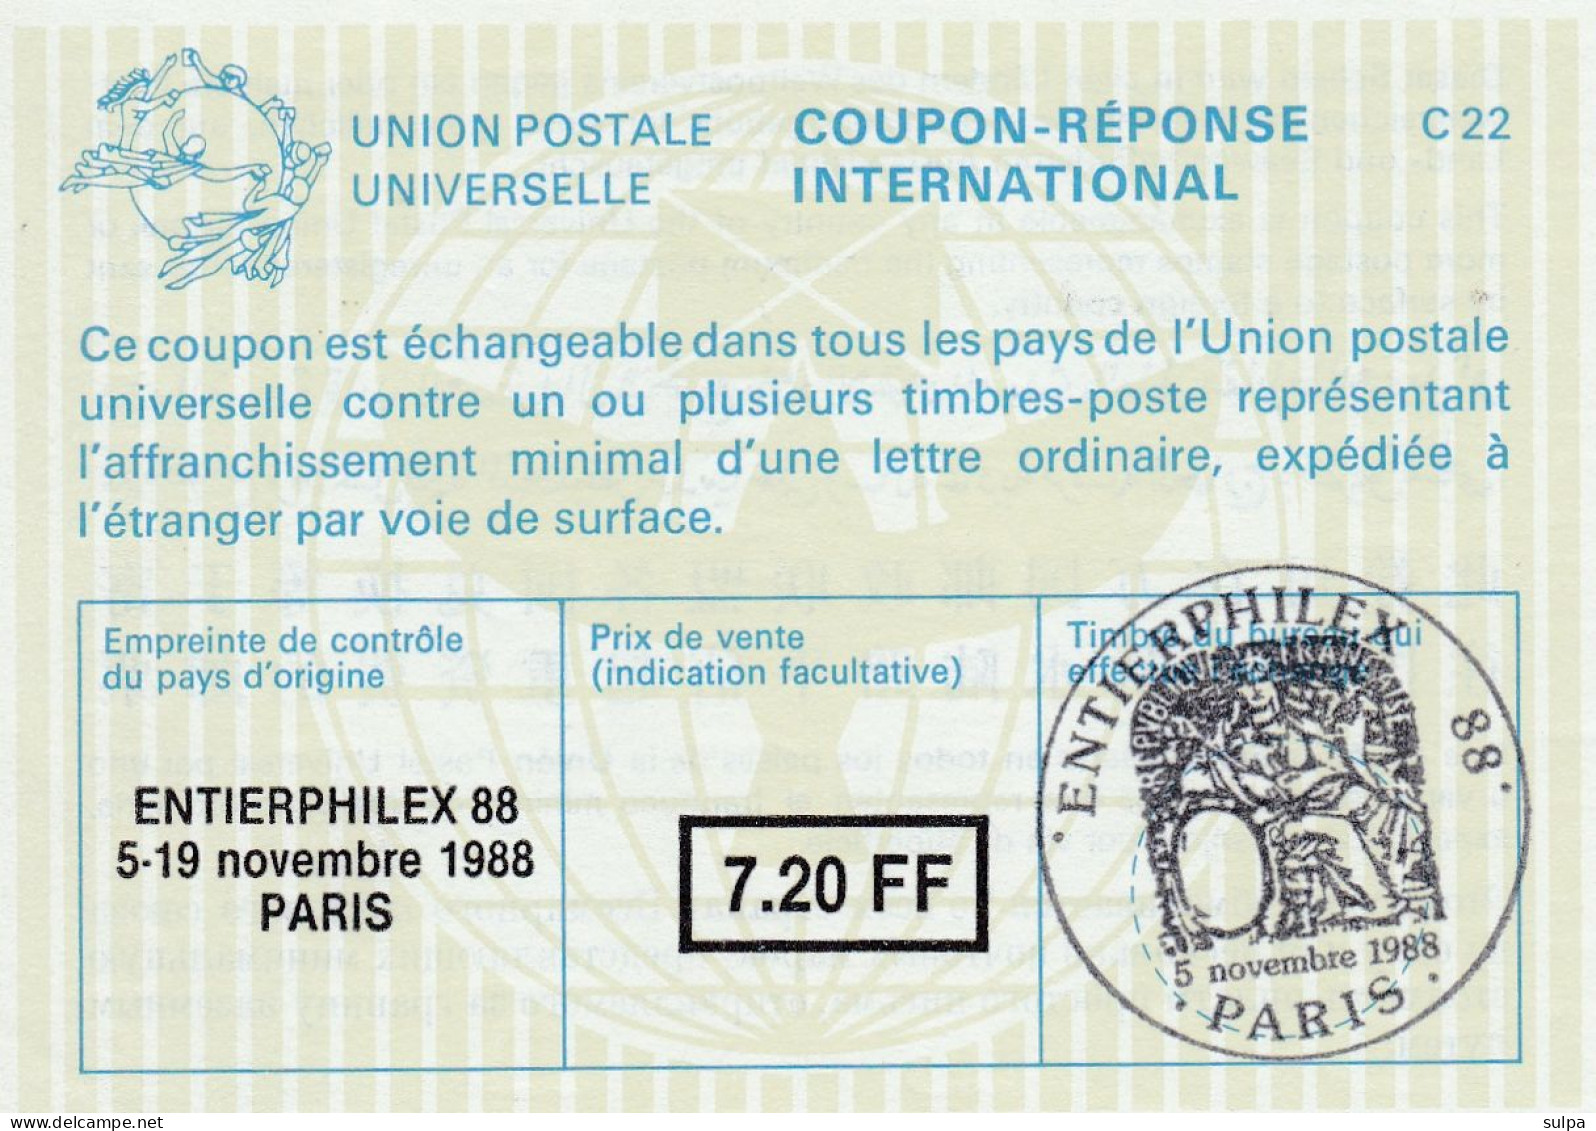 Coupon-réponse PARIS 1988 - Antwoordbons